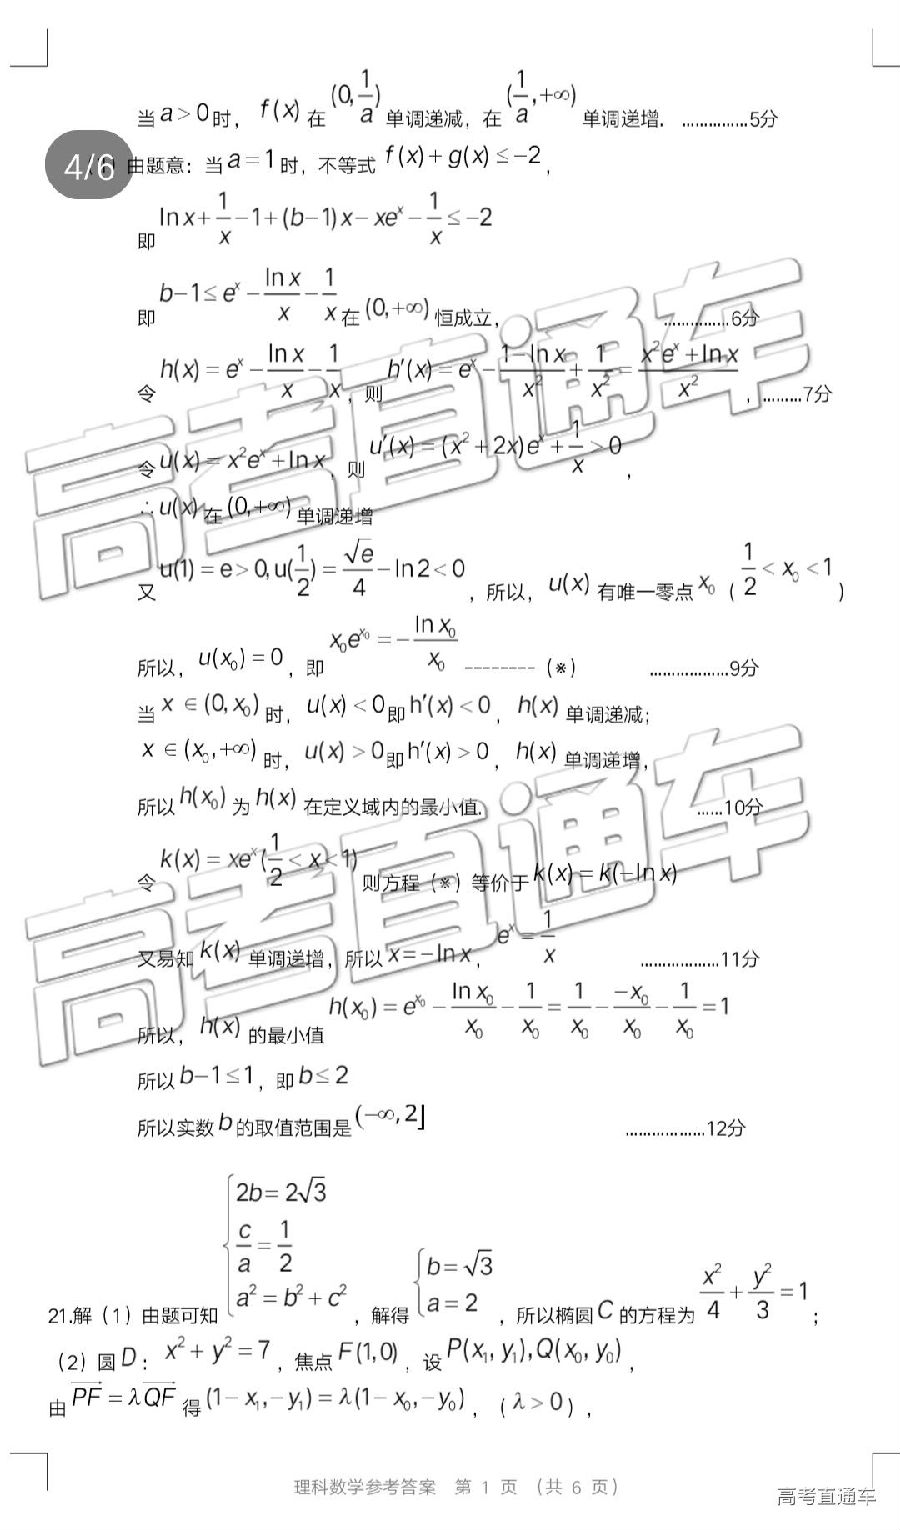 2019年5月16广东省高三高考适应性考试理科数学试题含答案